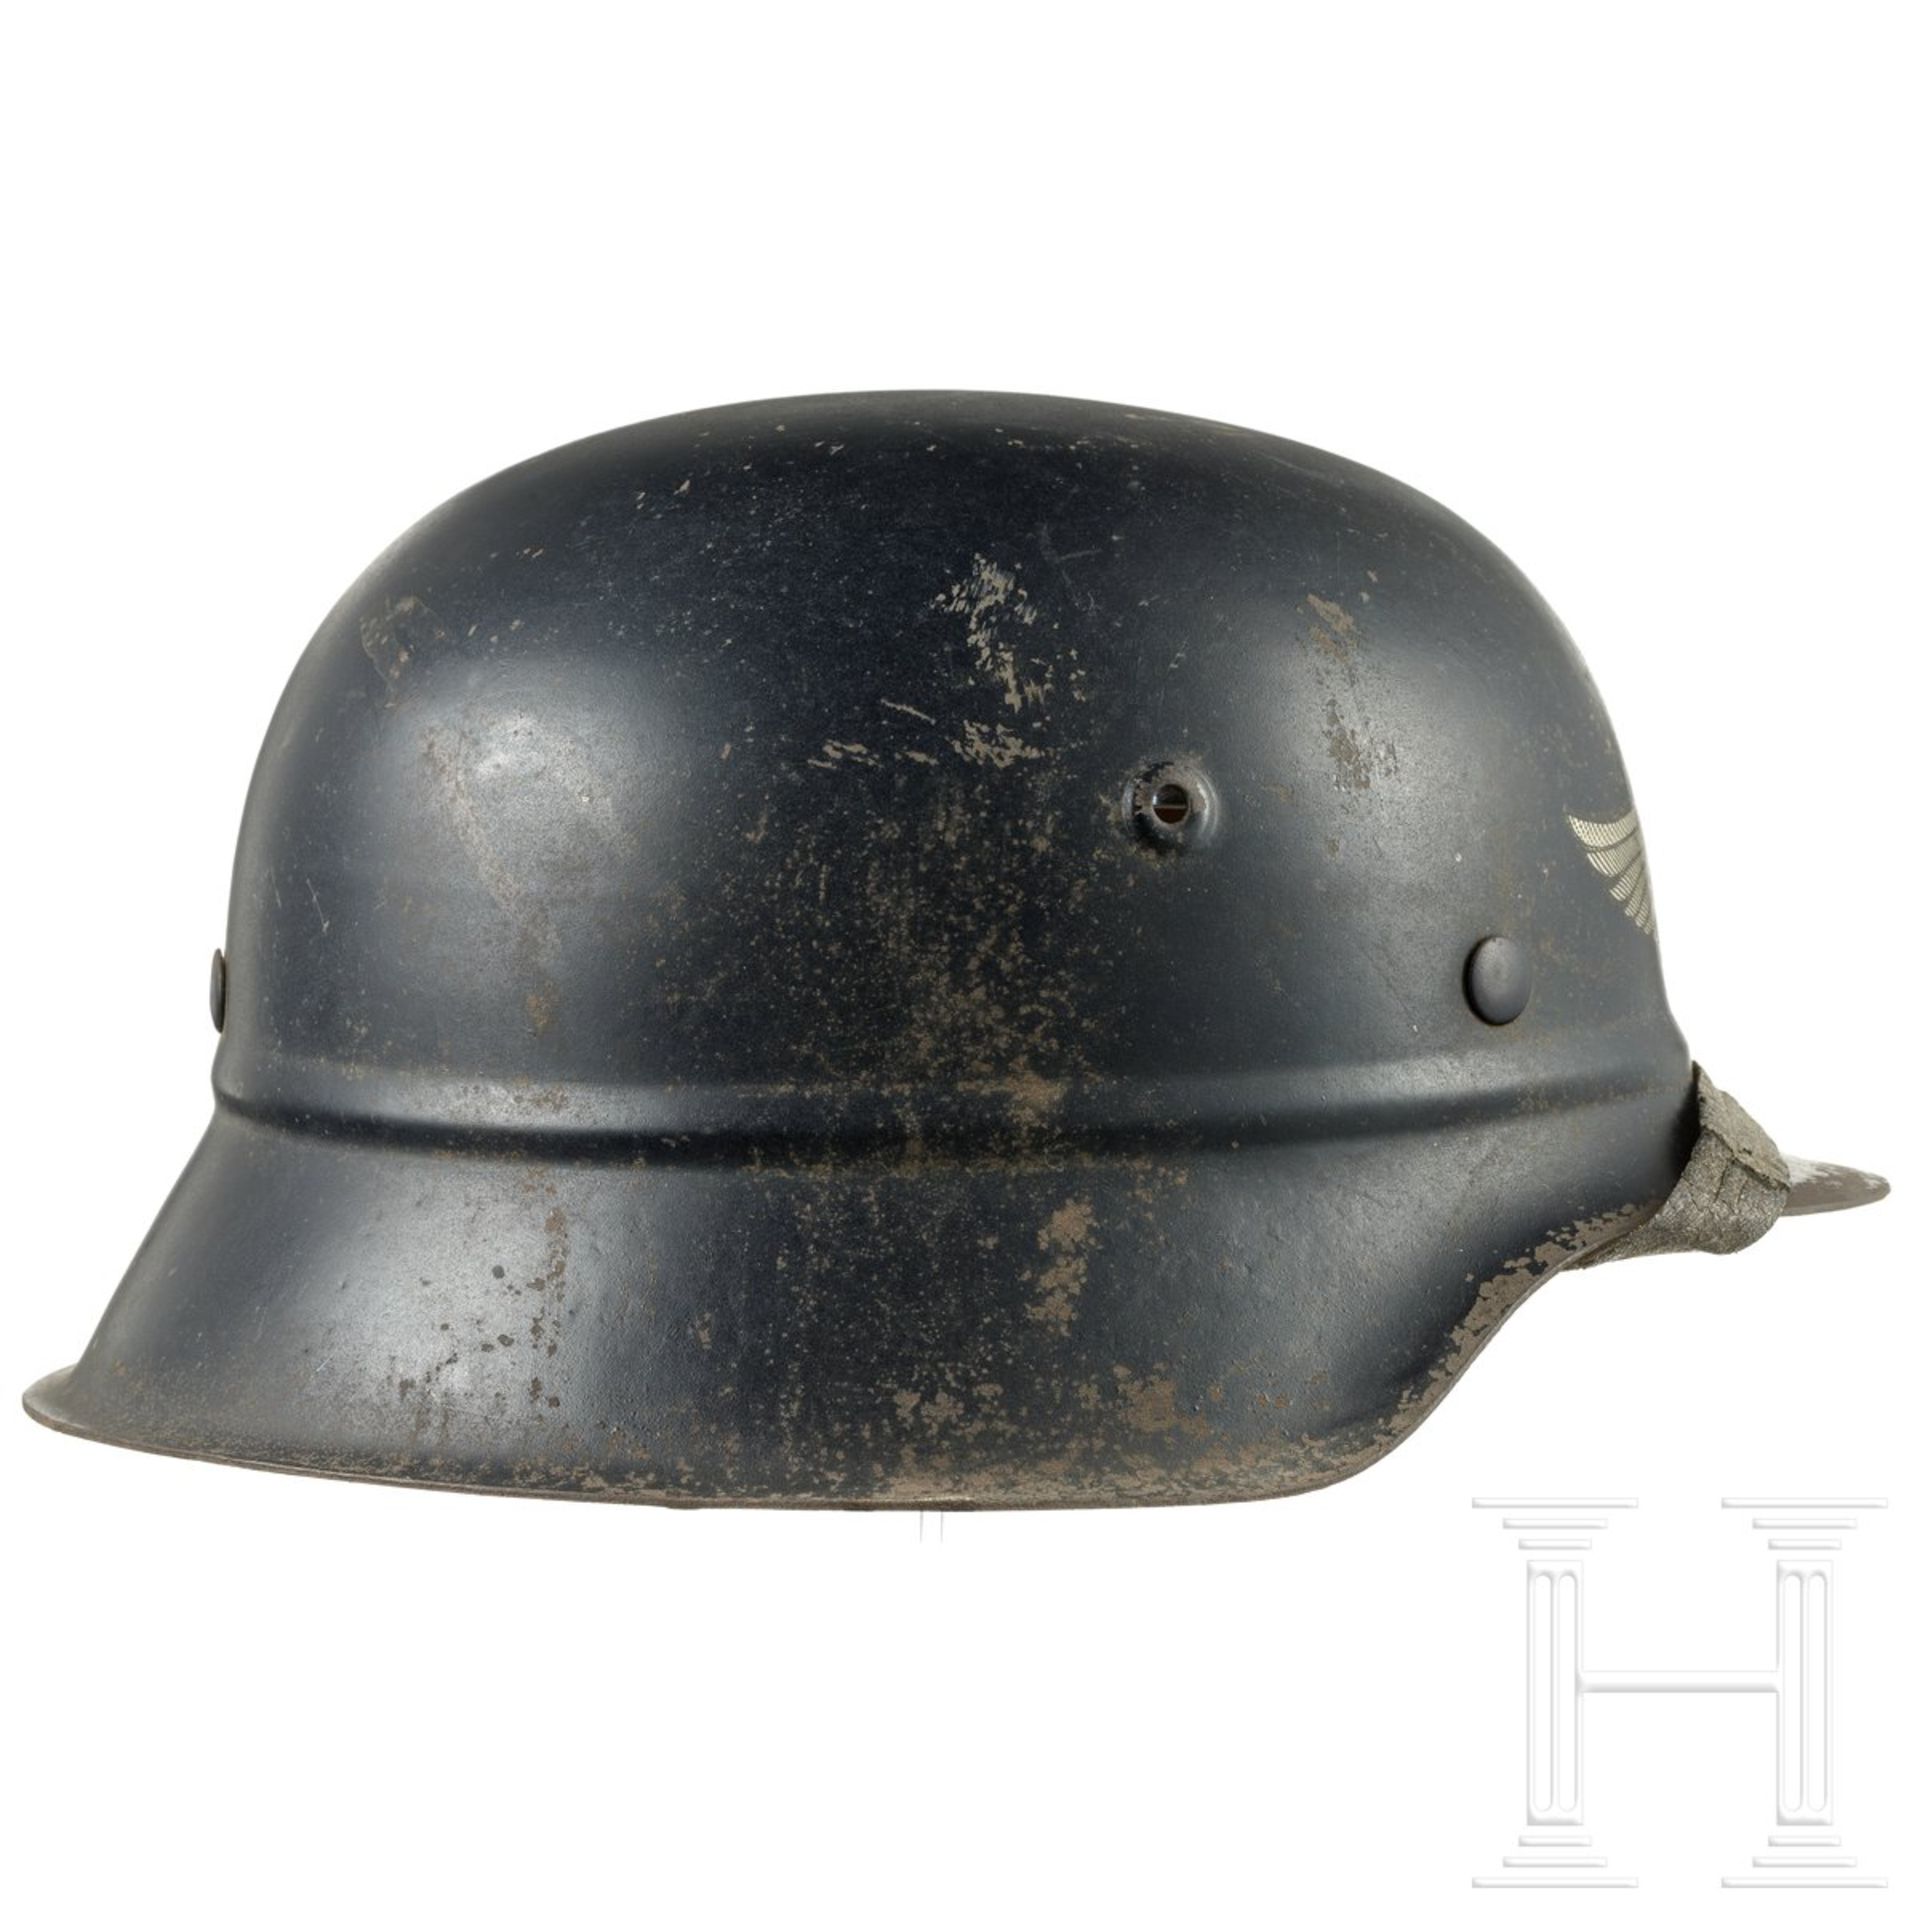 Stahlhelm M 42 für Luftschutz, deutsch, um 1942 - 1945 - Image 2 of 5